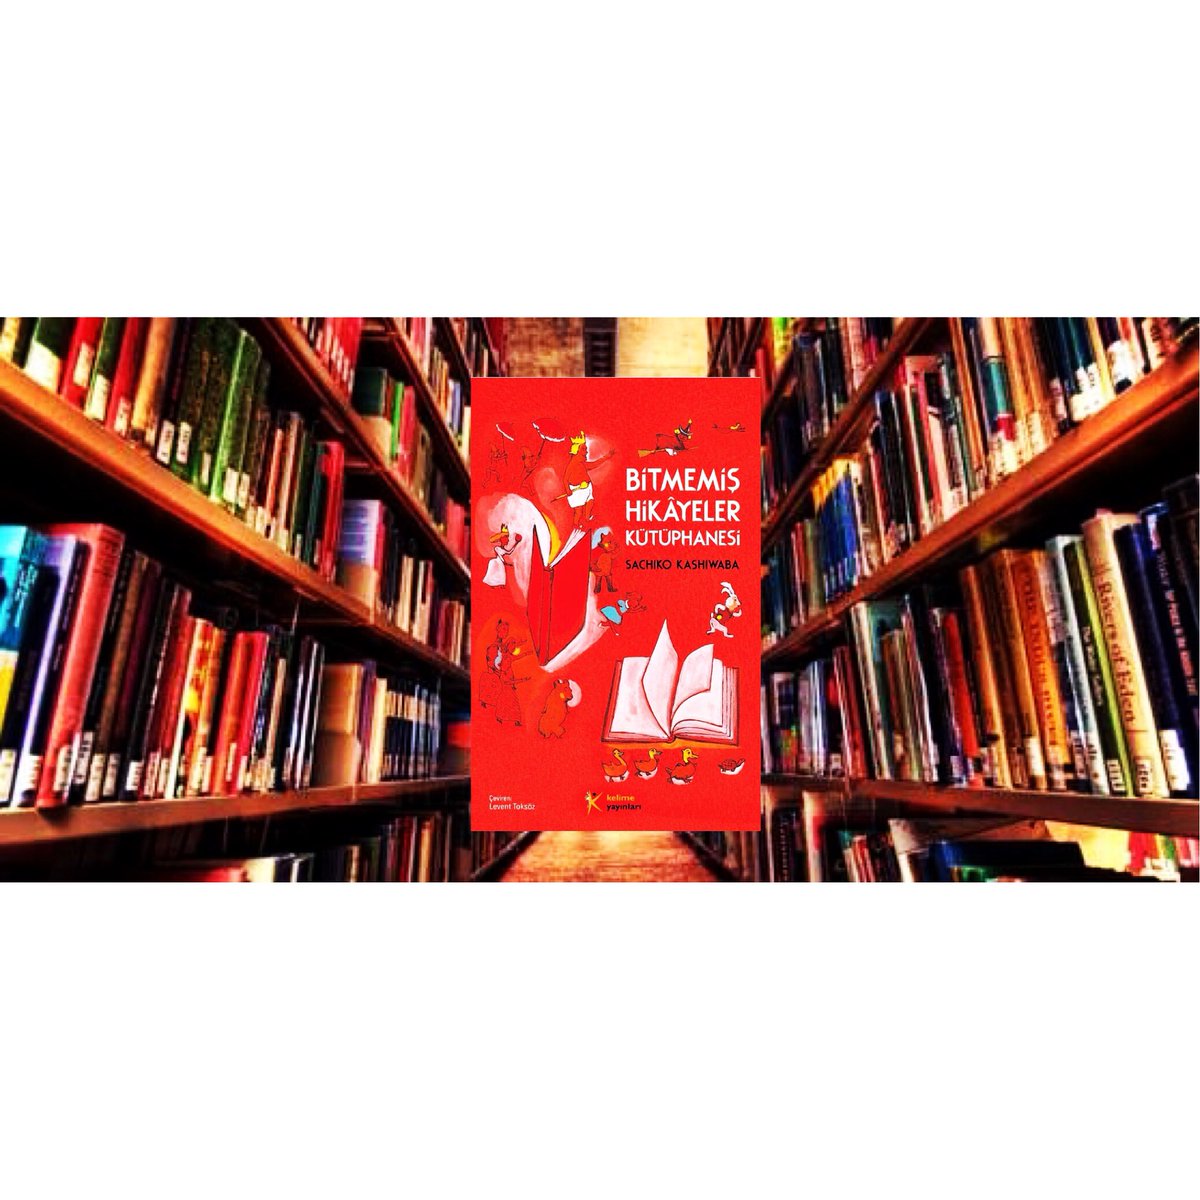 Kütüphane Haftasında okunacak güzel bir kitap daha!
Bitmemiş Hikâyeler Kütüphanesi - Sachiko Kashiwaba
#bitmemişhikayelerkütüphanesi #sachikokashiwaba #kütüphanelerhaftası #kütüphane #kelimeyayınları #kitap #kitapsevgisi #kitapkokusu #kitapkurdu #kitaplariyikivar #çocukkitabı